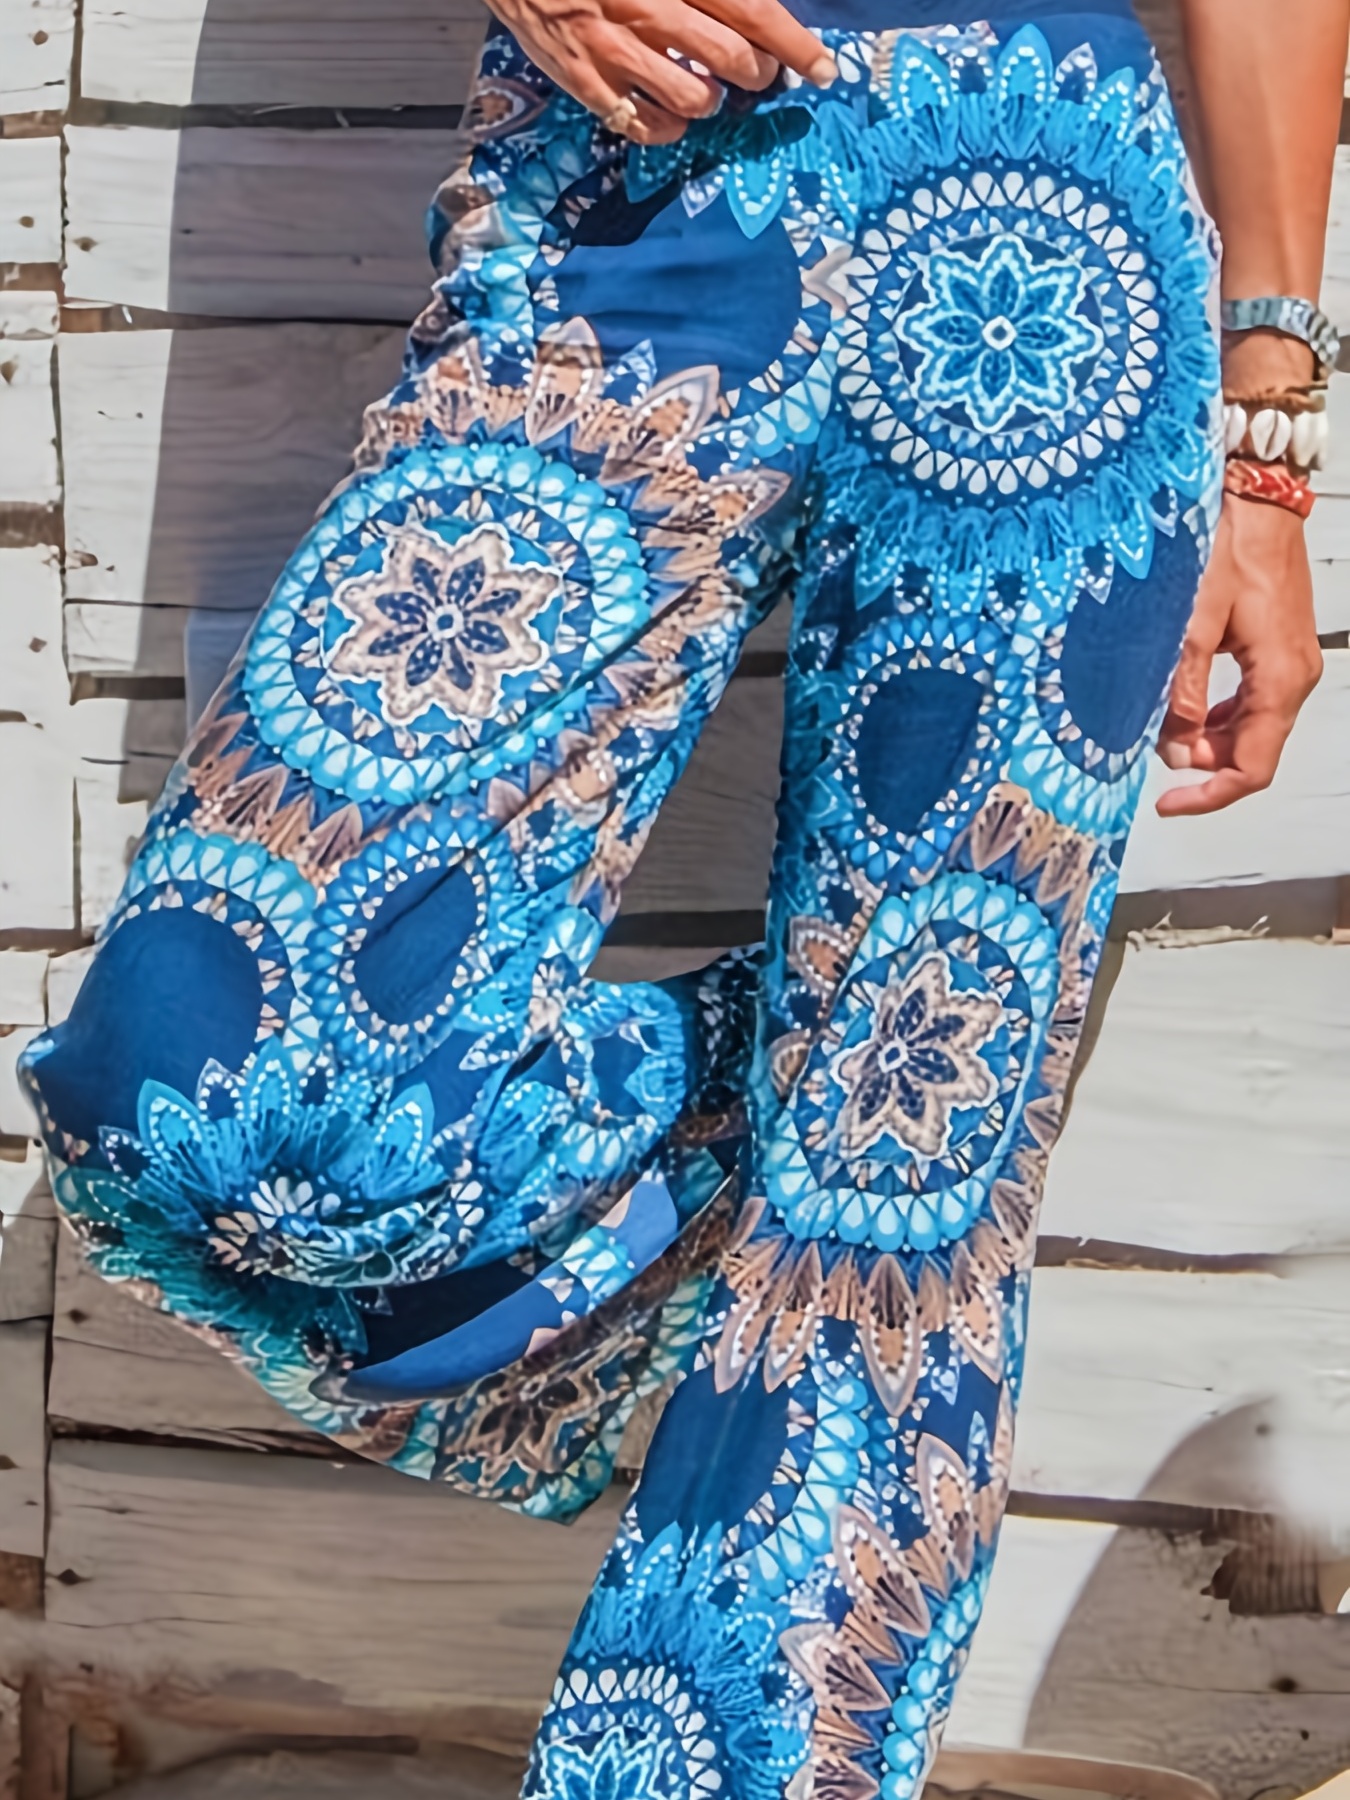 Mandala Floral Print Pants, Boho Wide Leg High Waist Pants, Women's Clothing